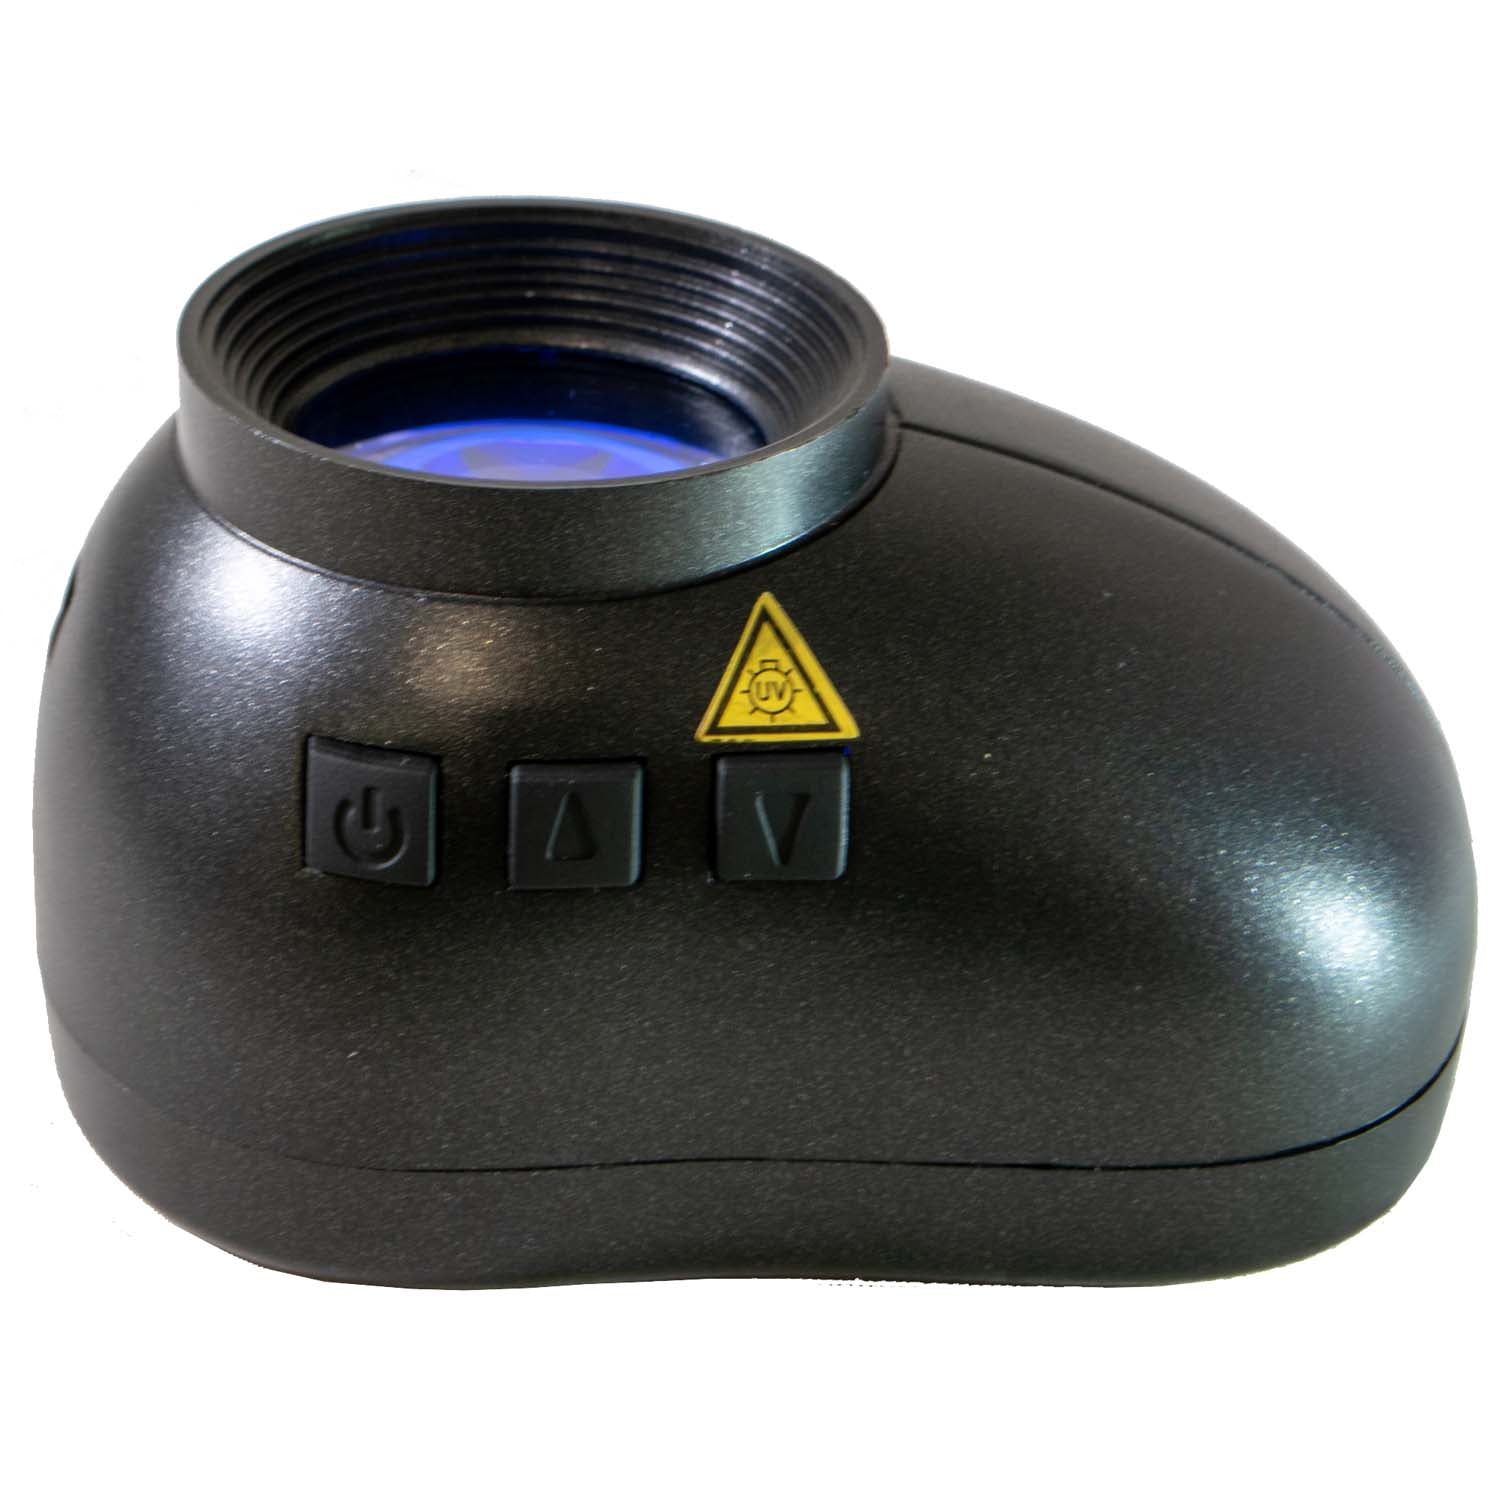 Pocket - UV Lamp - Testing Flourescence - Safe Albums